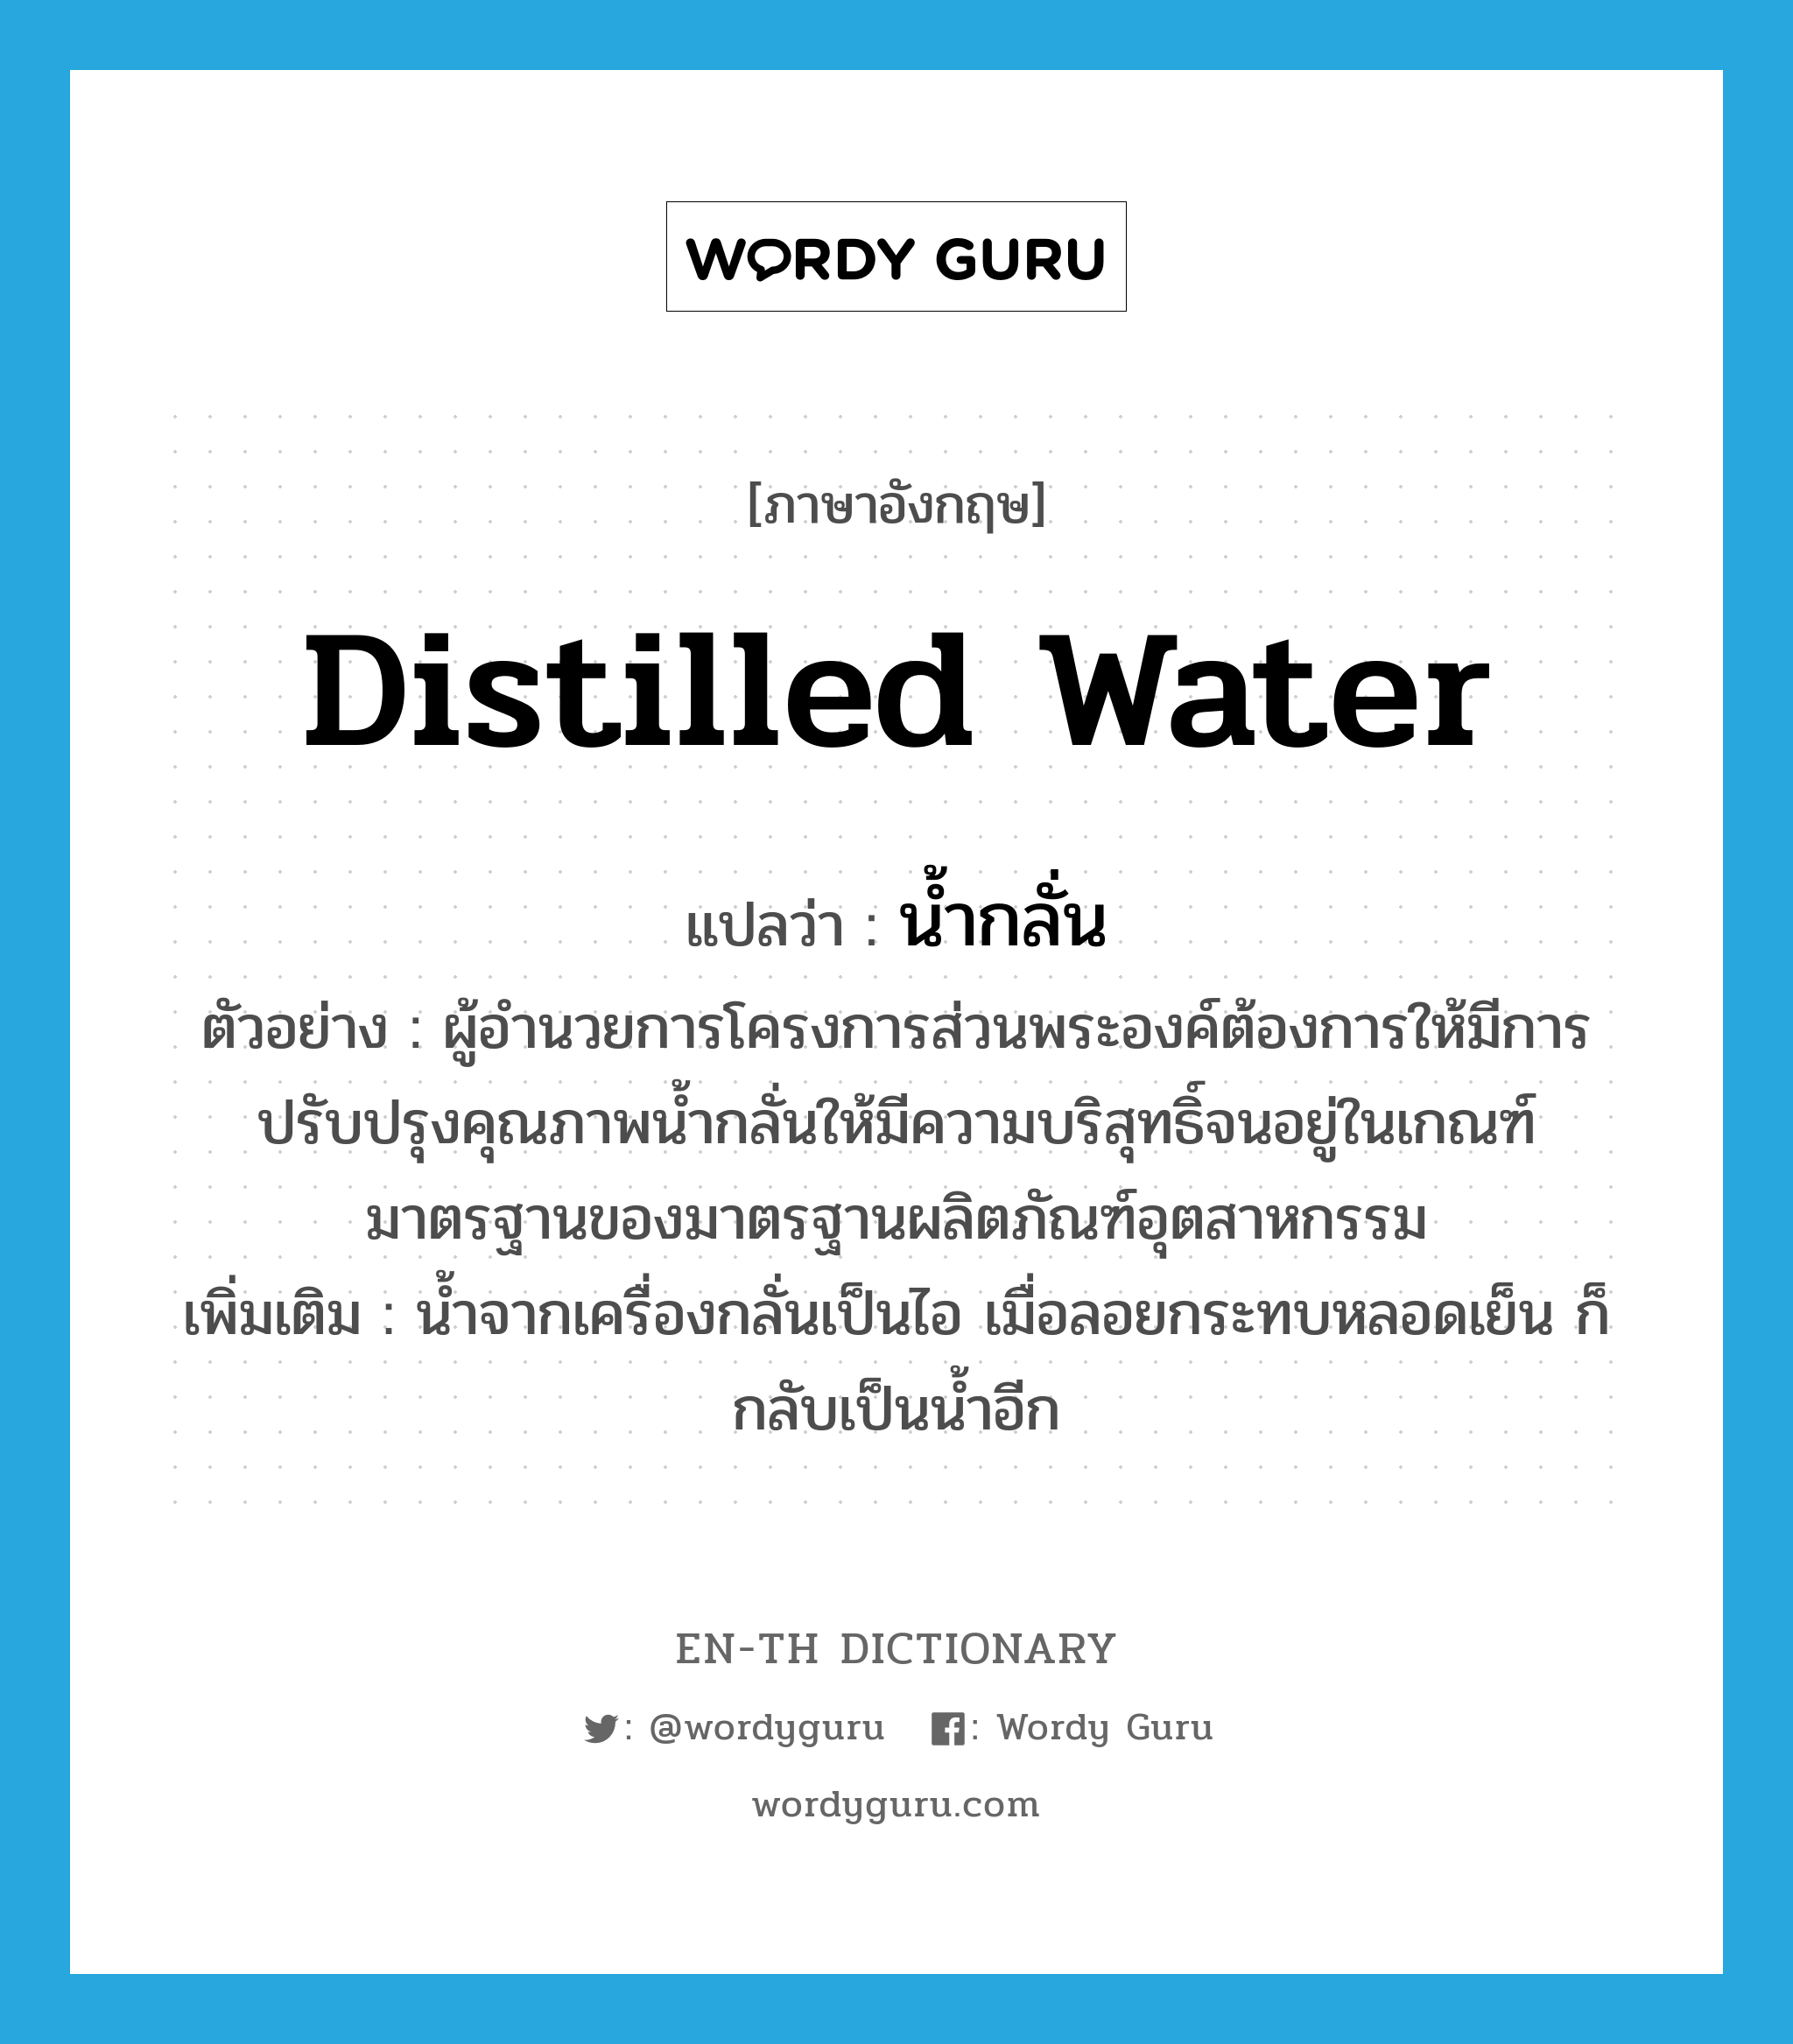 distilled water แปลว่า?, คำศัพท์ภาษาอังกฤษ distilled water แปลว่า น้ำกลั่น ประเภท N ตัวอย่าง ผู้อำนวยการโครงการส่วนพระองค์ต้องการให้มีการปรับปรุงคุณภาพน้ำกลั่นให้มีความบริสุทธิ์จนอยู่ในเกณฑ์มาตรฐานของมาตรฐานผลิตภัณฑ์อุตสาหกรรม เพิ่มเติม น้ำจากเครื่องกลั่นเป็นไอ เมื่อลอยกระทบหลอดเย็น ก็กลับเป็นน้ำอีก หมวด N